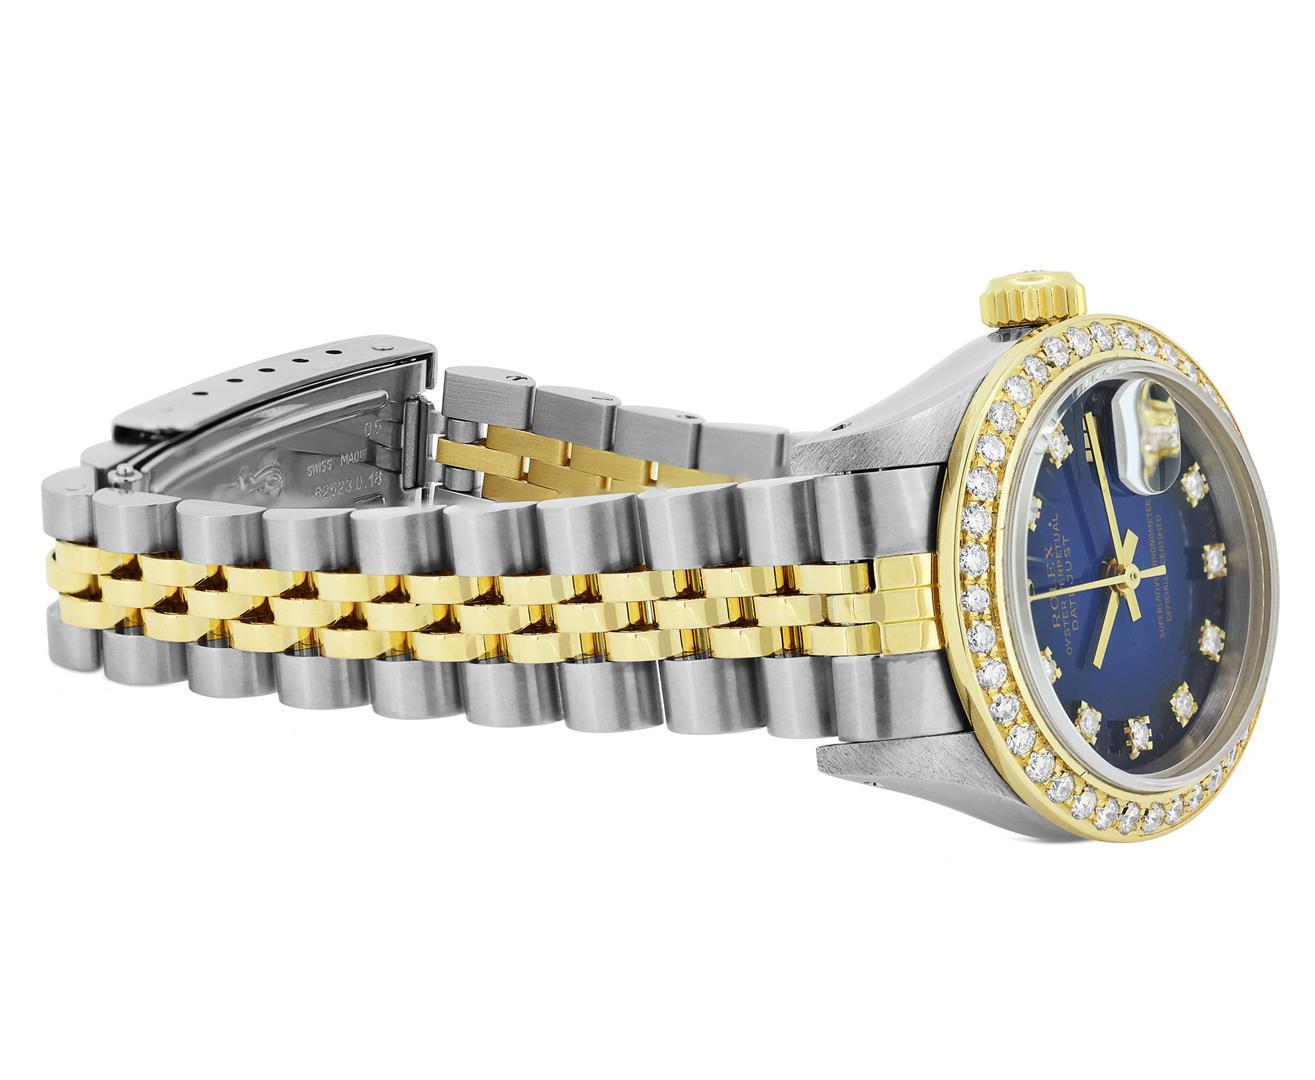 Rolex Ladies Quickset 18K Gold And Steel Blue Vignette Diamond Datejust Wristwat